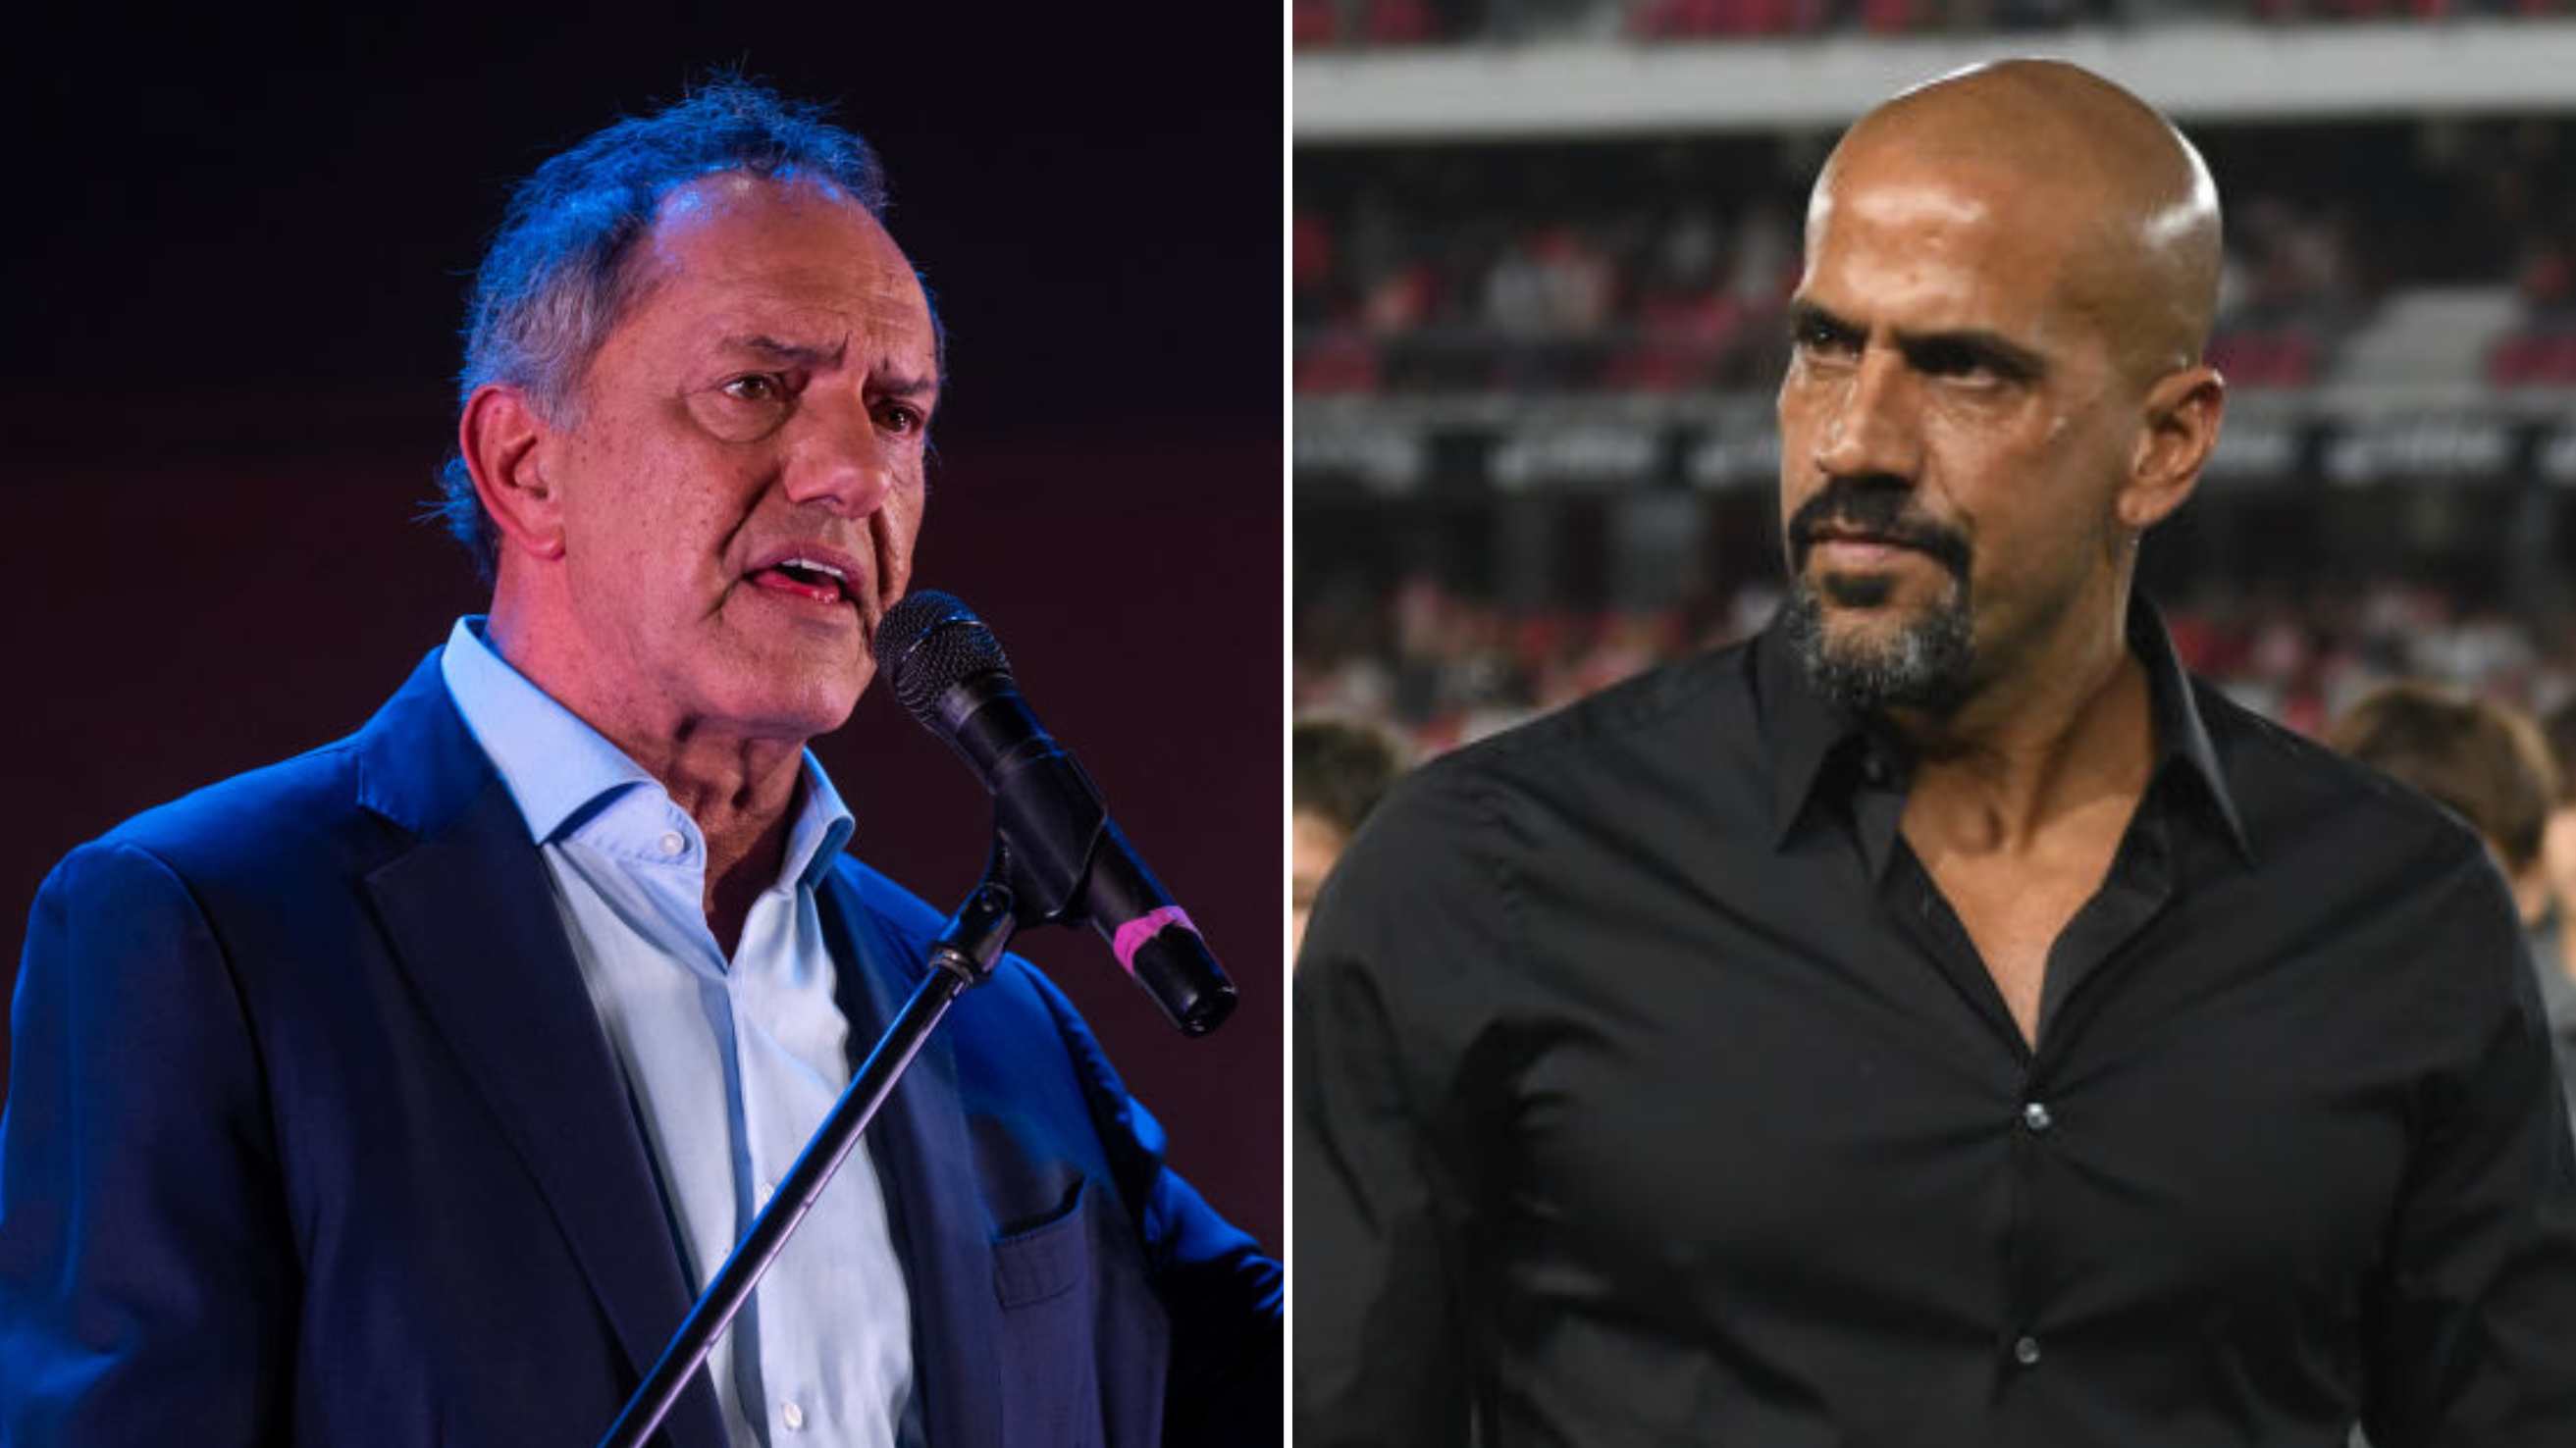 Verón y Scioli, nuevos actores que se suman a la pelea ent... AFA por el ingreso de capitales privados al fútbol
argentino